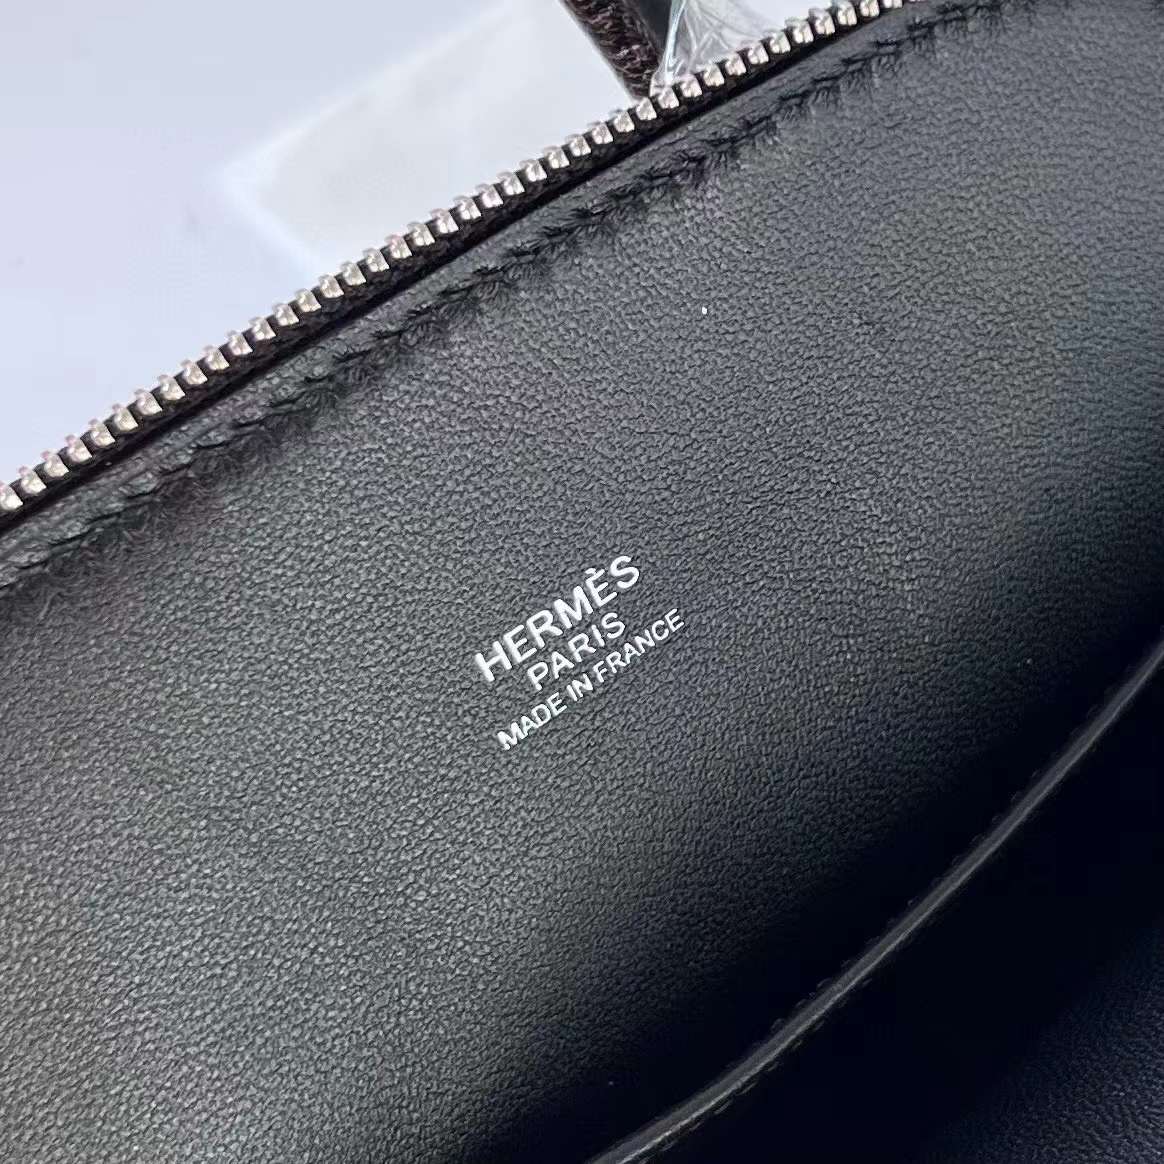 Hermès（爱马仕）Mini Bolide 迷你保龄球包 Chevre 山羊皮 Ck89 黑色 银扣 19cm 全手工蜡线缝制 Phw